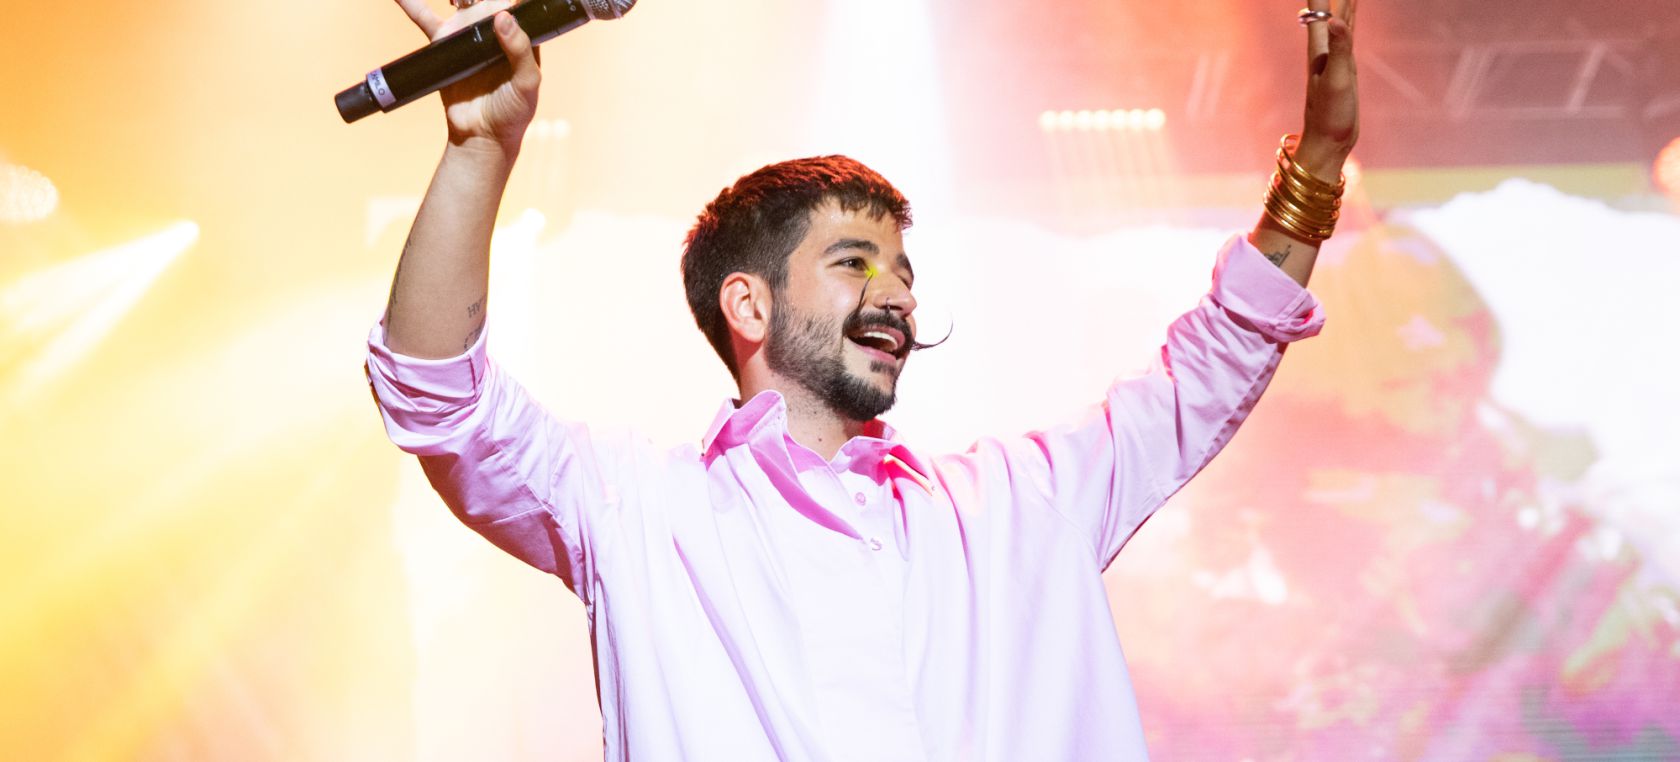 Actuaciones confirmadas para Billboard Latin Music Awards 2022: Camilo, Tini, Ozuna, Pablo López, Maluma y más